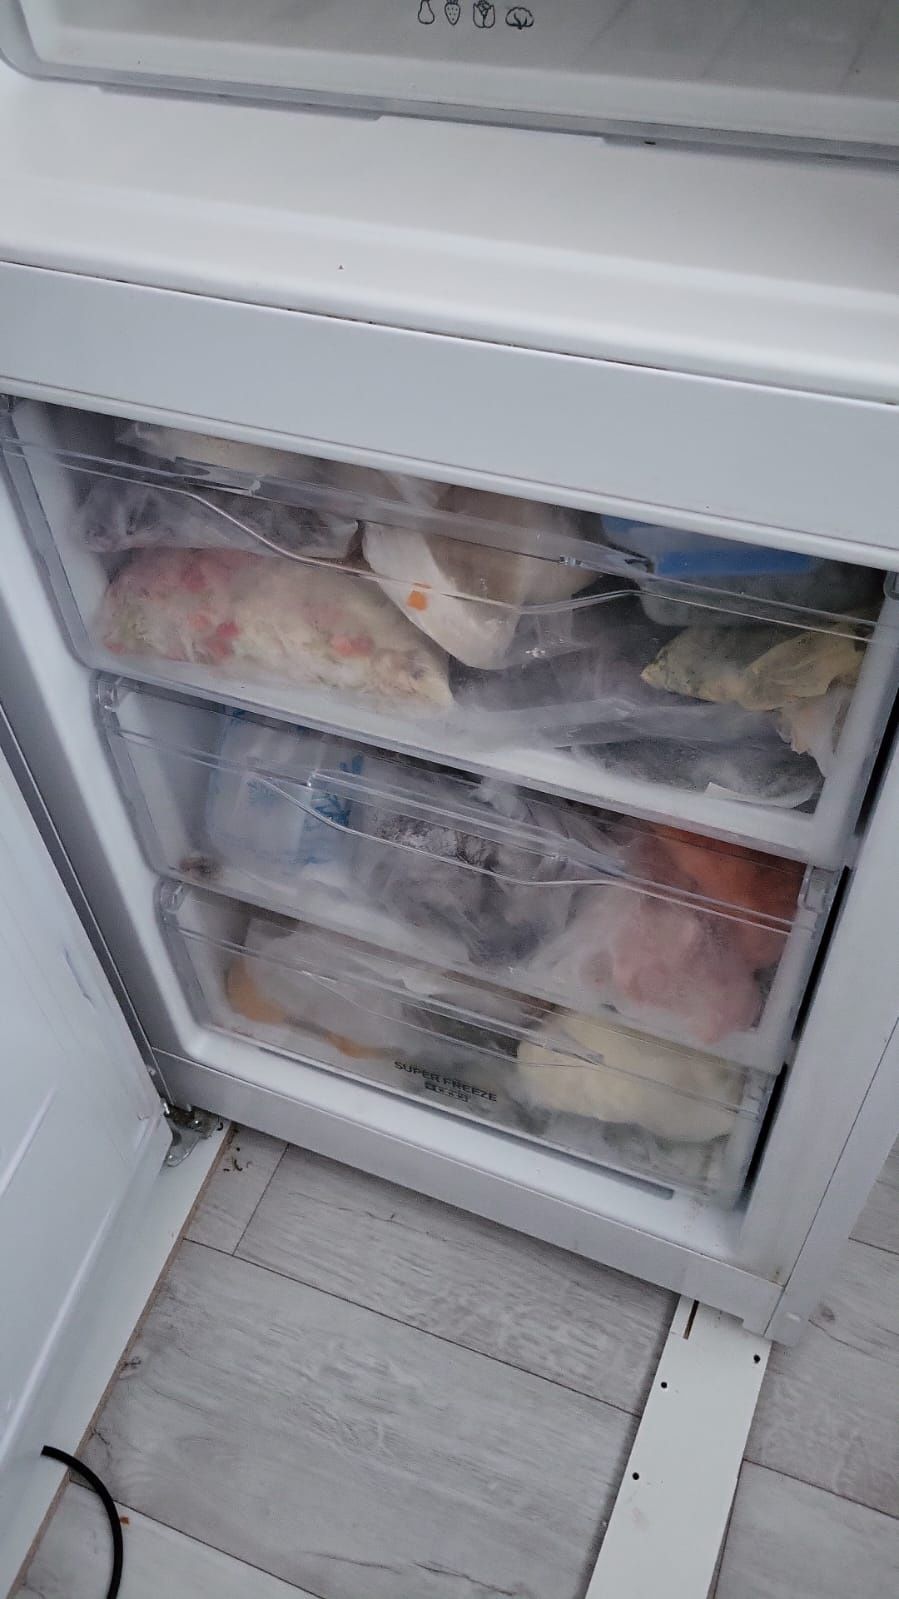 Холодильник
высота 1 м 92 см 
Всё соответствует фотография м
В отлично